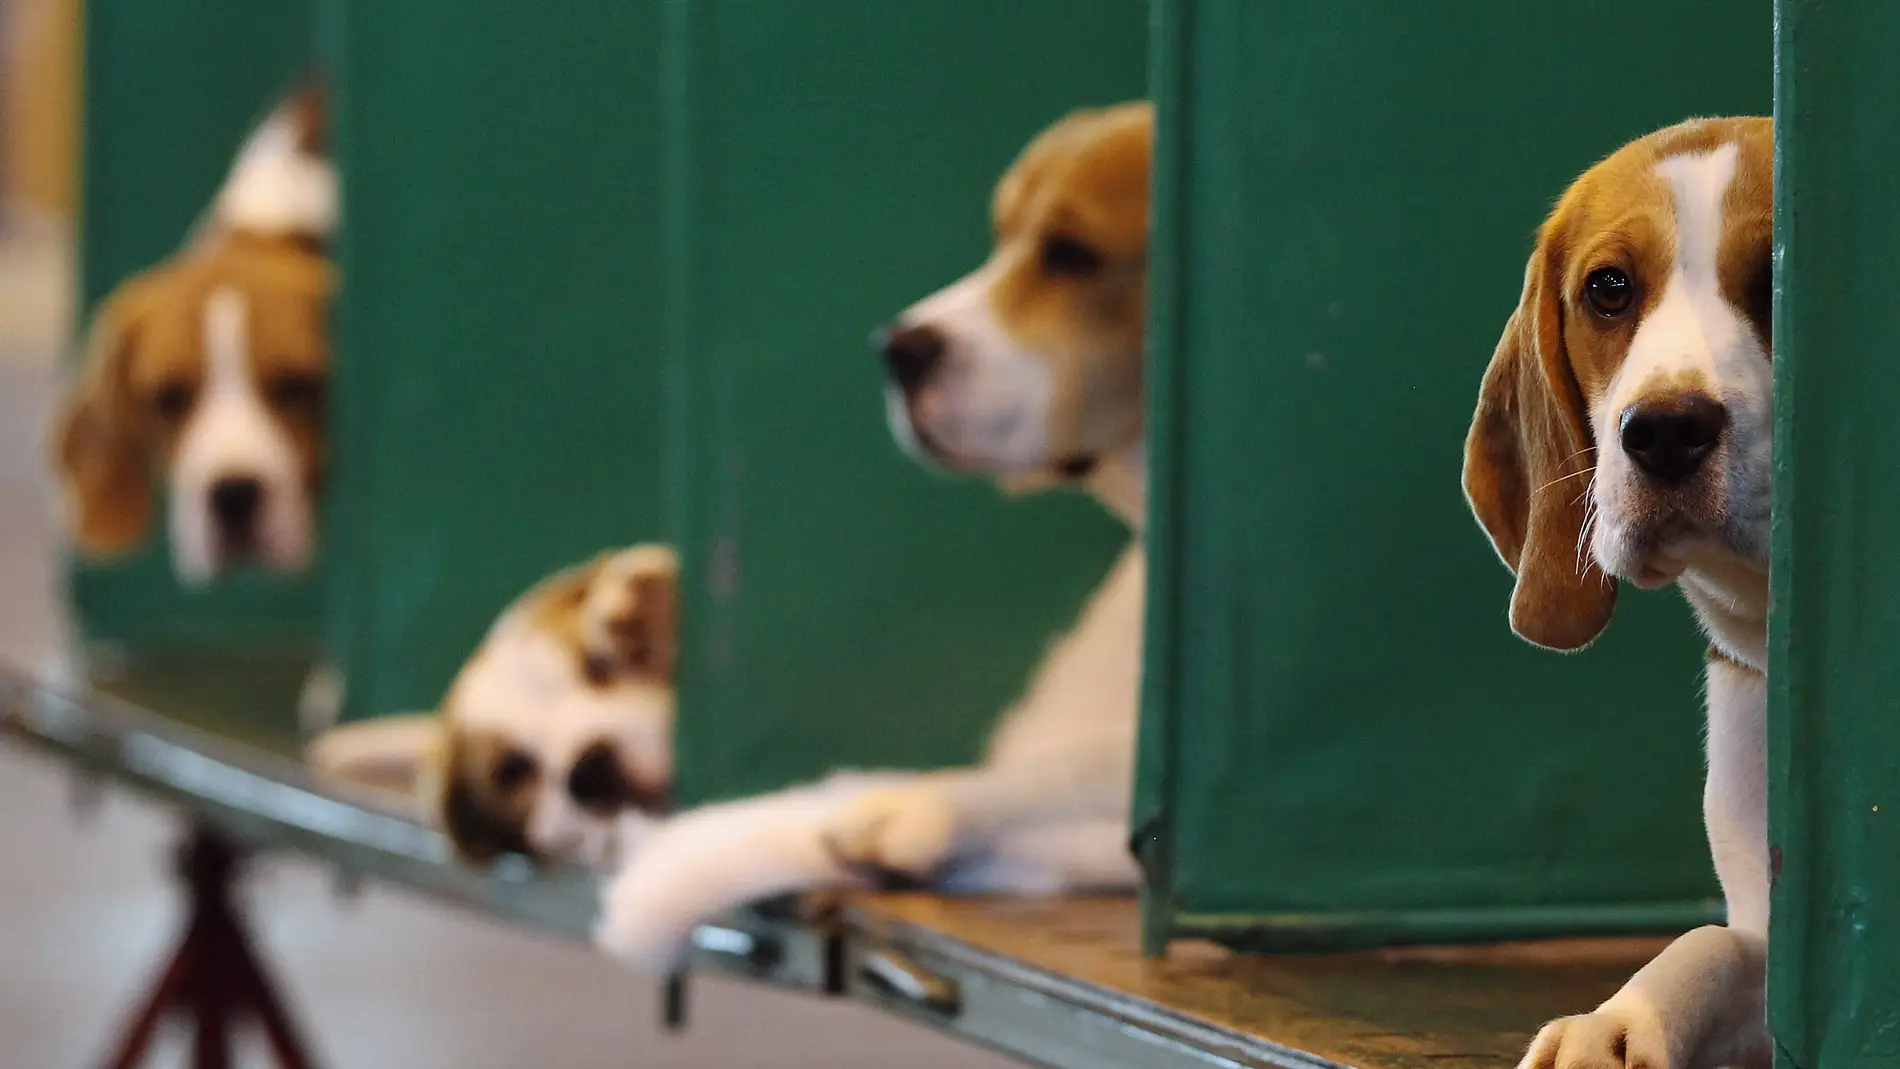 El Govern niega que el peligroso experimento con cachorros se realice en Cataluña: "El proyecto se hace en Madrid"